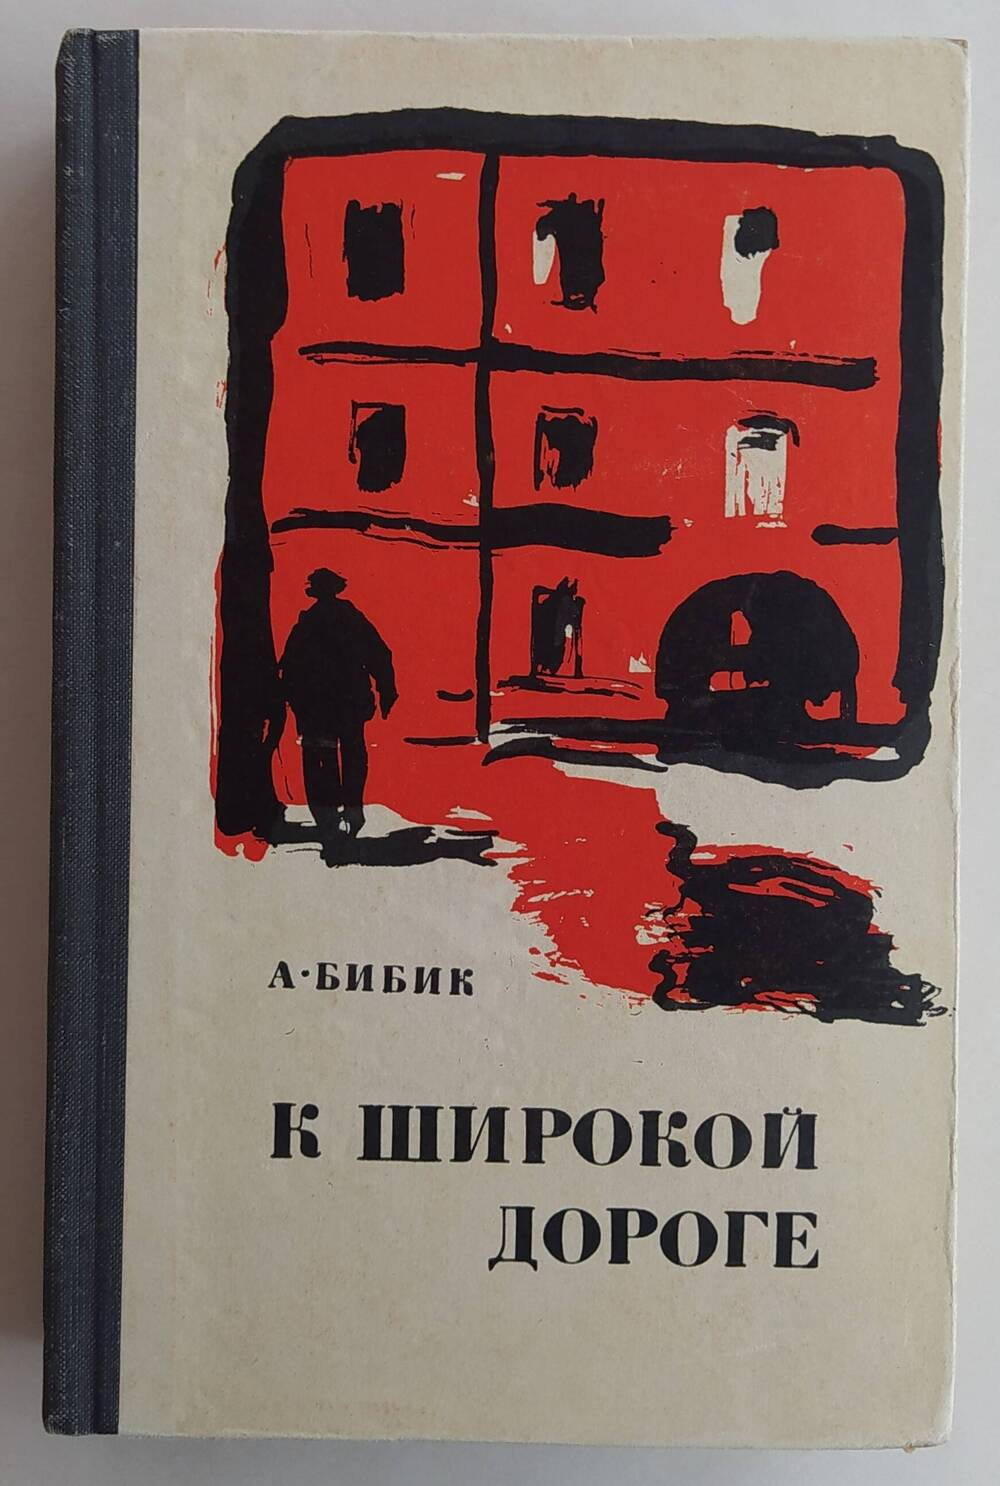 Книга  А.П. Бибика «К широкой дороге» роман, выпущен издательством «Советский писатель» г. Москва в 1968 г., тиражом 100 000 экземпляров.